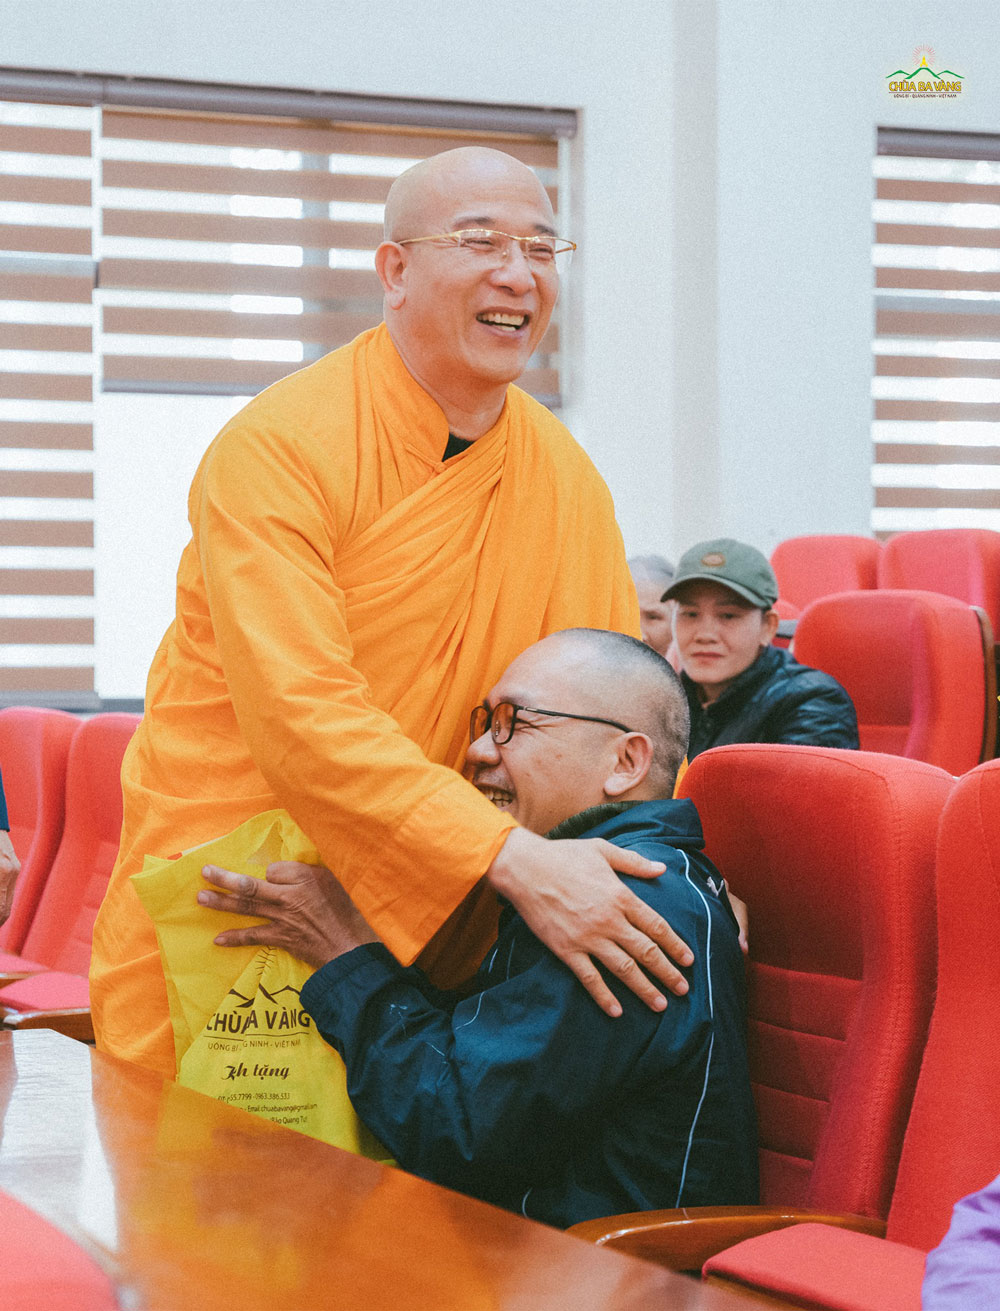 Chú Nguyễn Kế Chiến rất vui khi được gặp Sư Phụ Thích Trúc Thái Minh sau 2 năm. Chú chia sẻ bản thân cảm thấy rất yêu mến, gắn bó đối với Sư Phụ